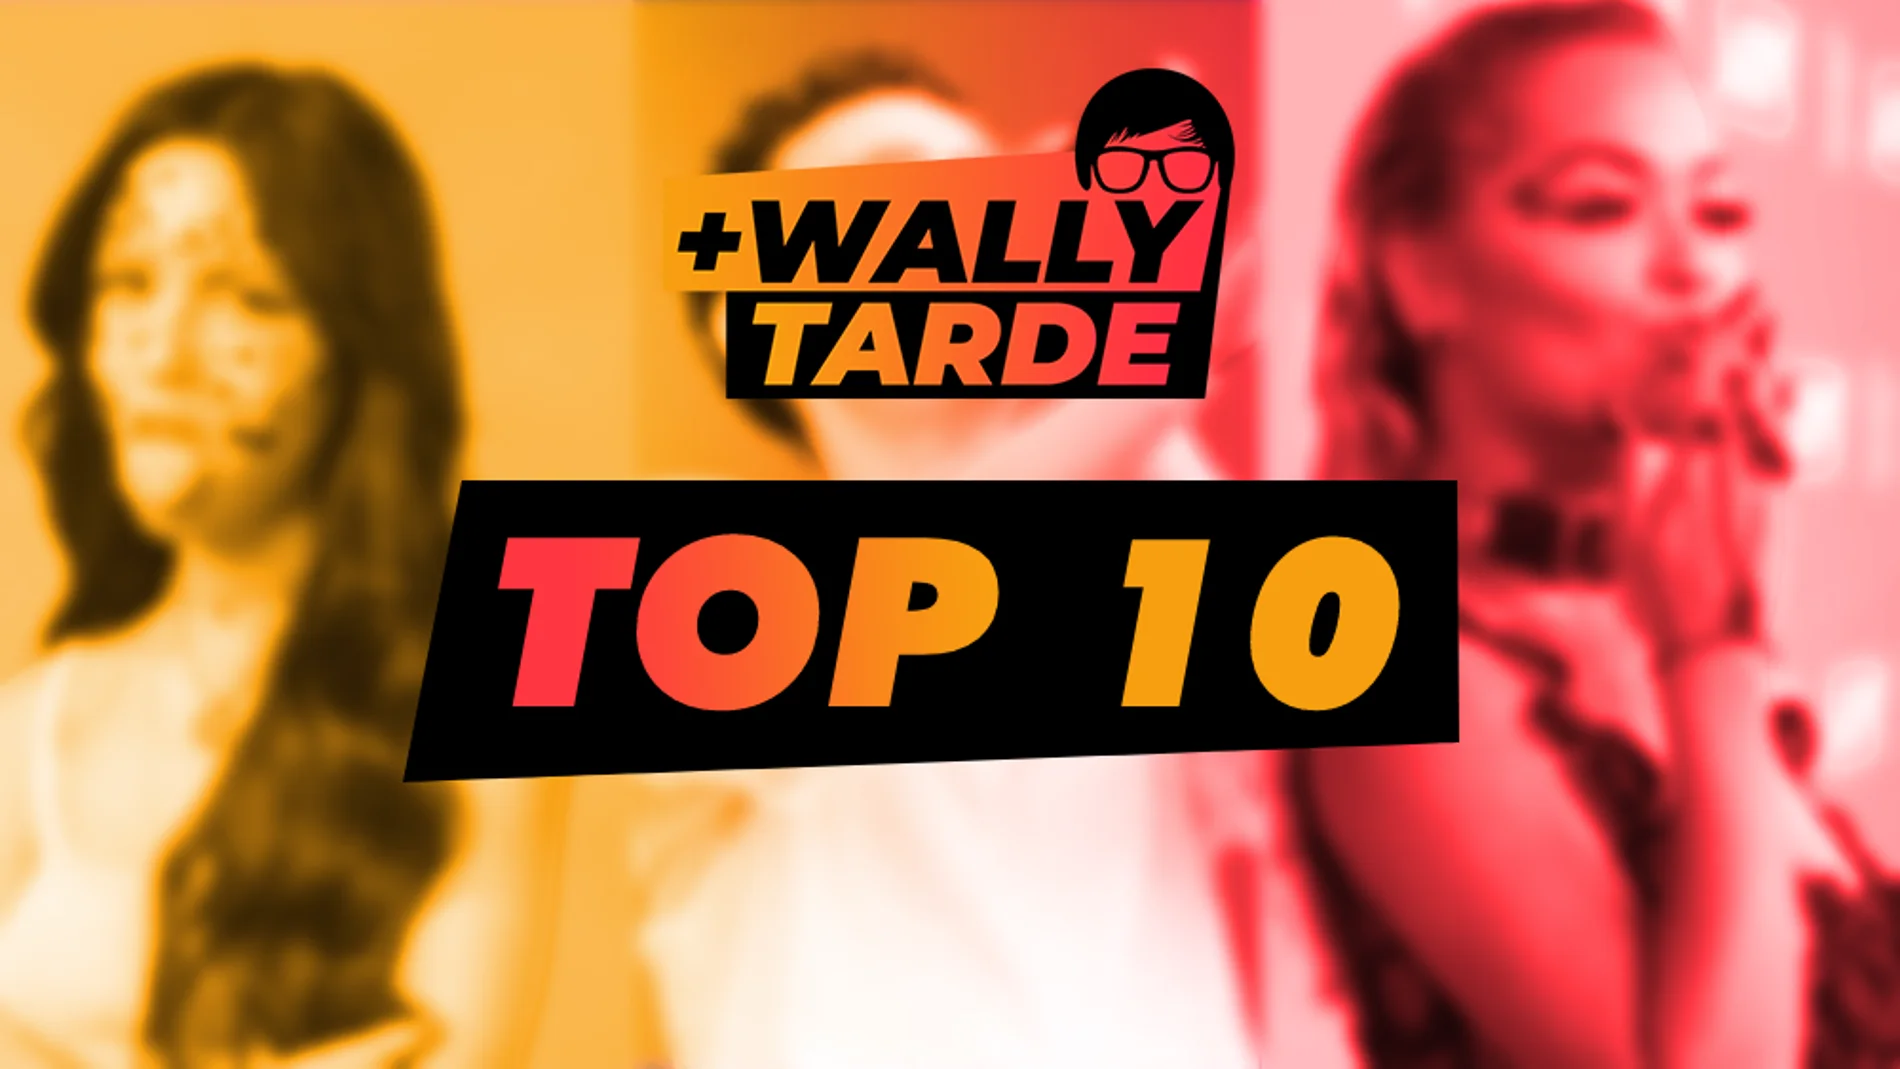 puramente interior subasta El Top 10 de Más Wally Tarde: ¿cuál es tu favorita? | Europa FM